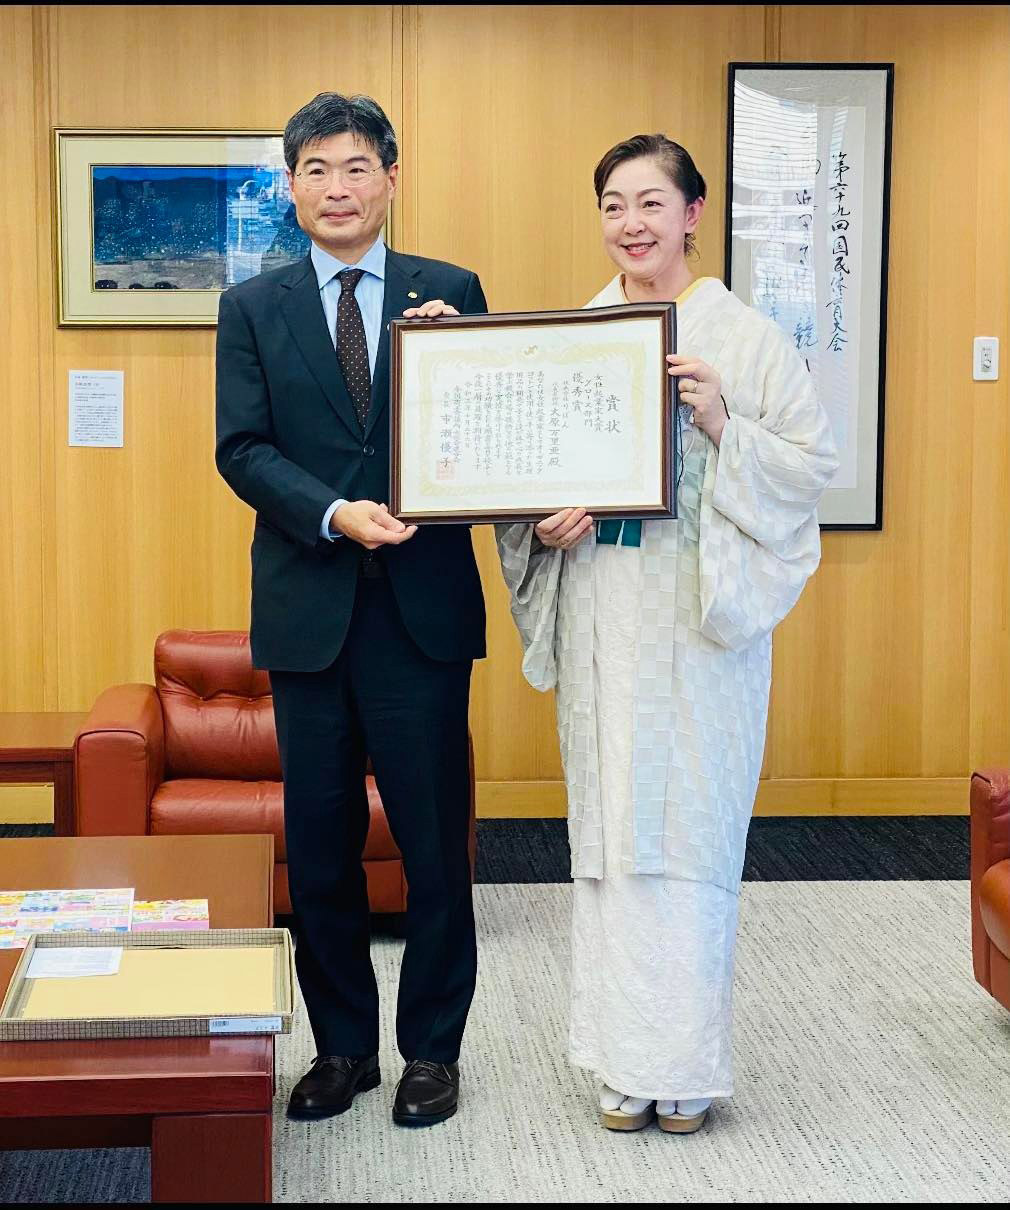 女性起業家大賞優秀賞受賞の報告を長崎県庁にて行いました。